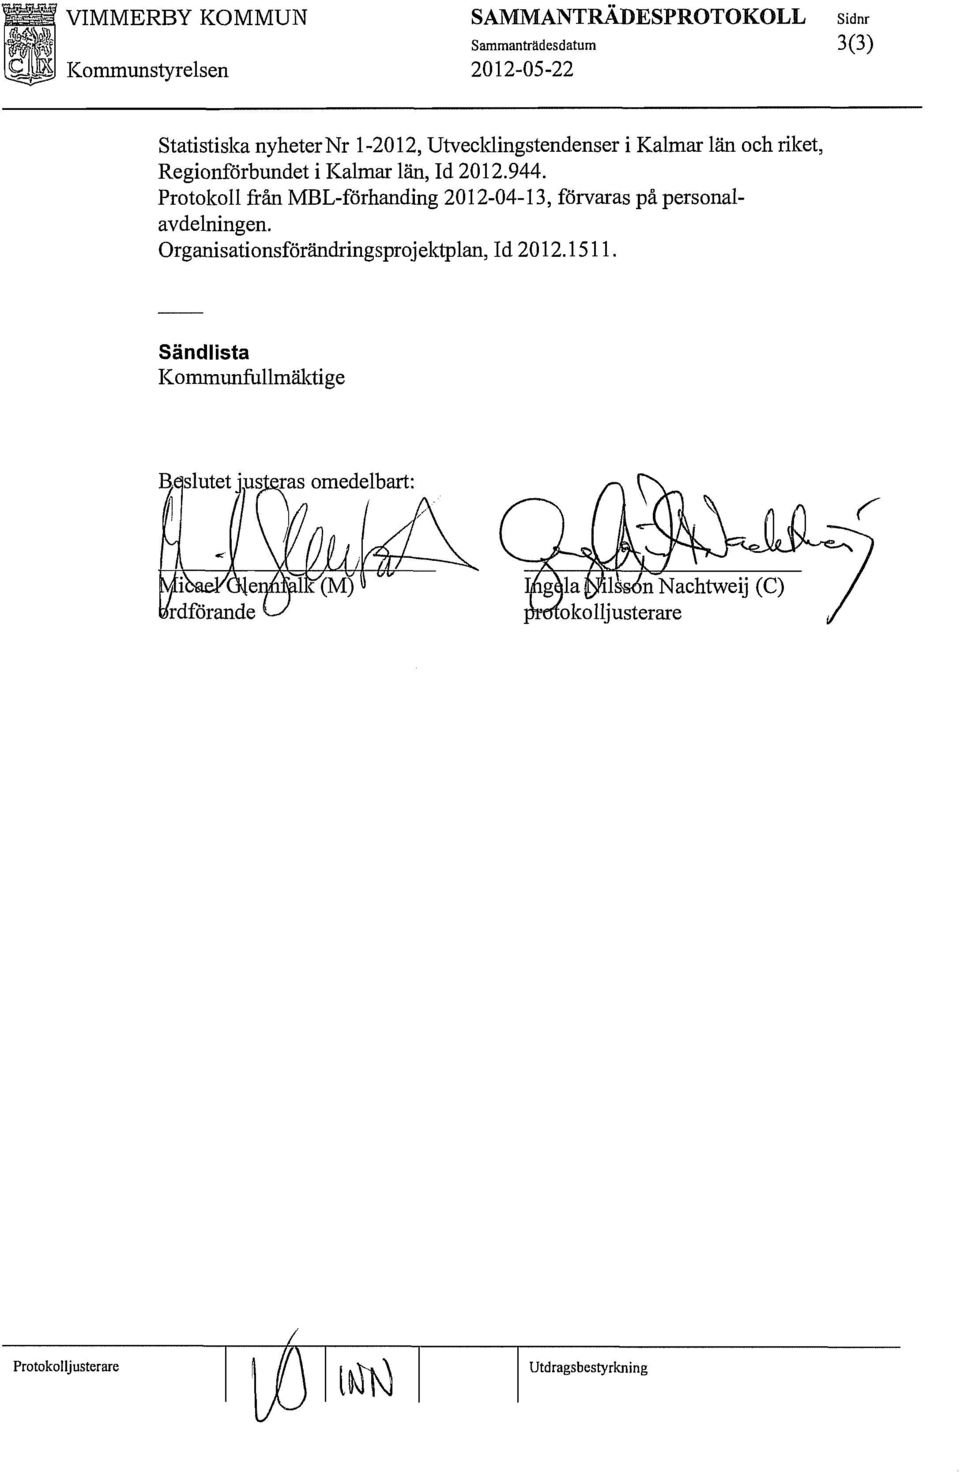 Protokoll från MBL-förhanding 2012-04-13, förvaras på